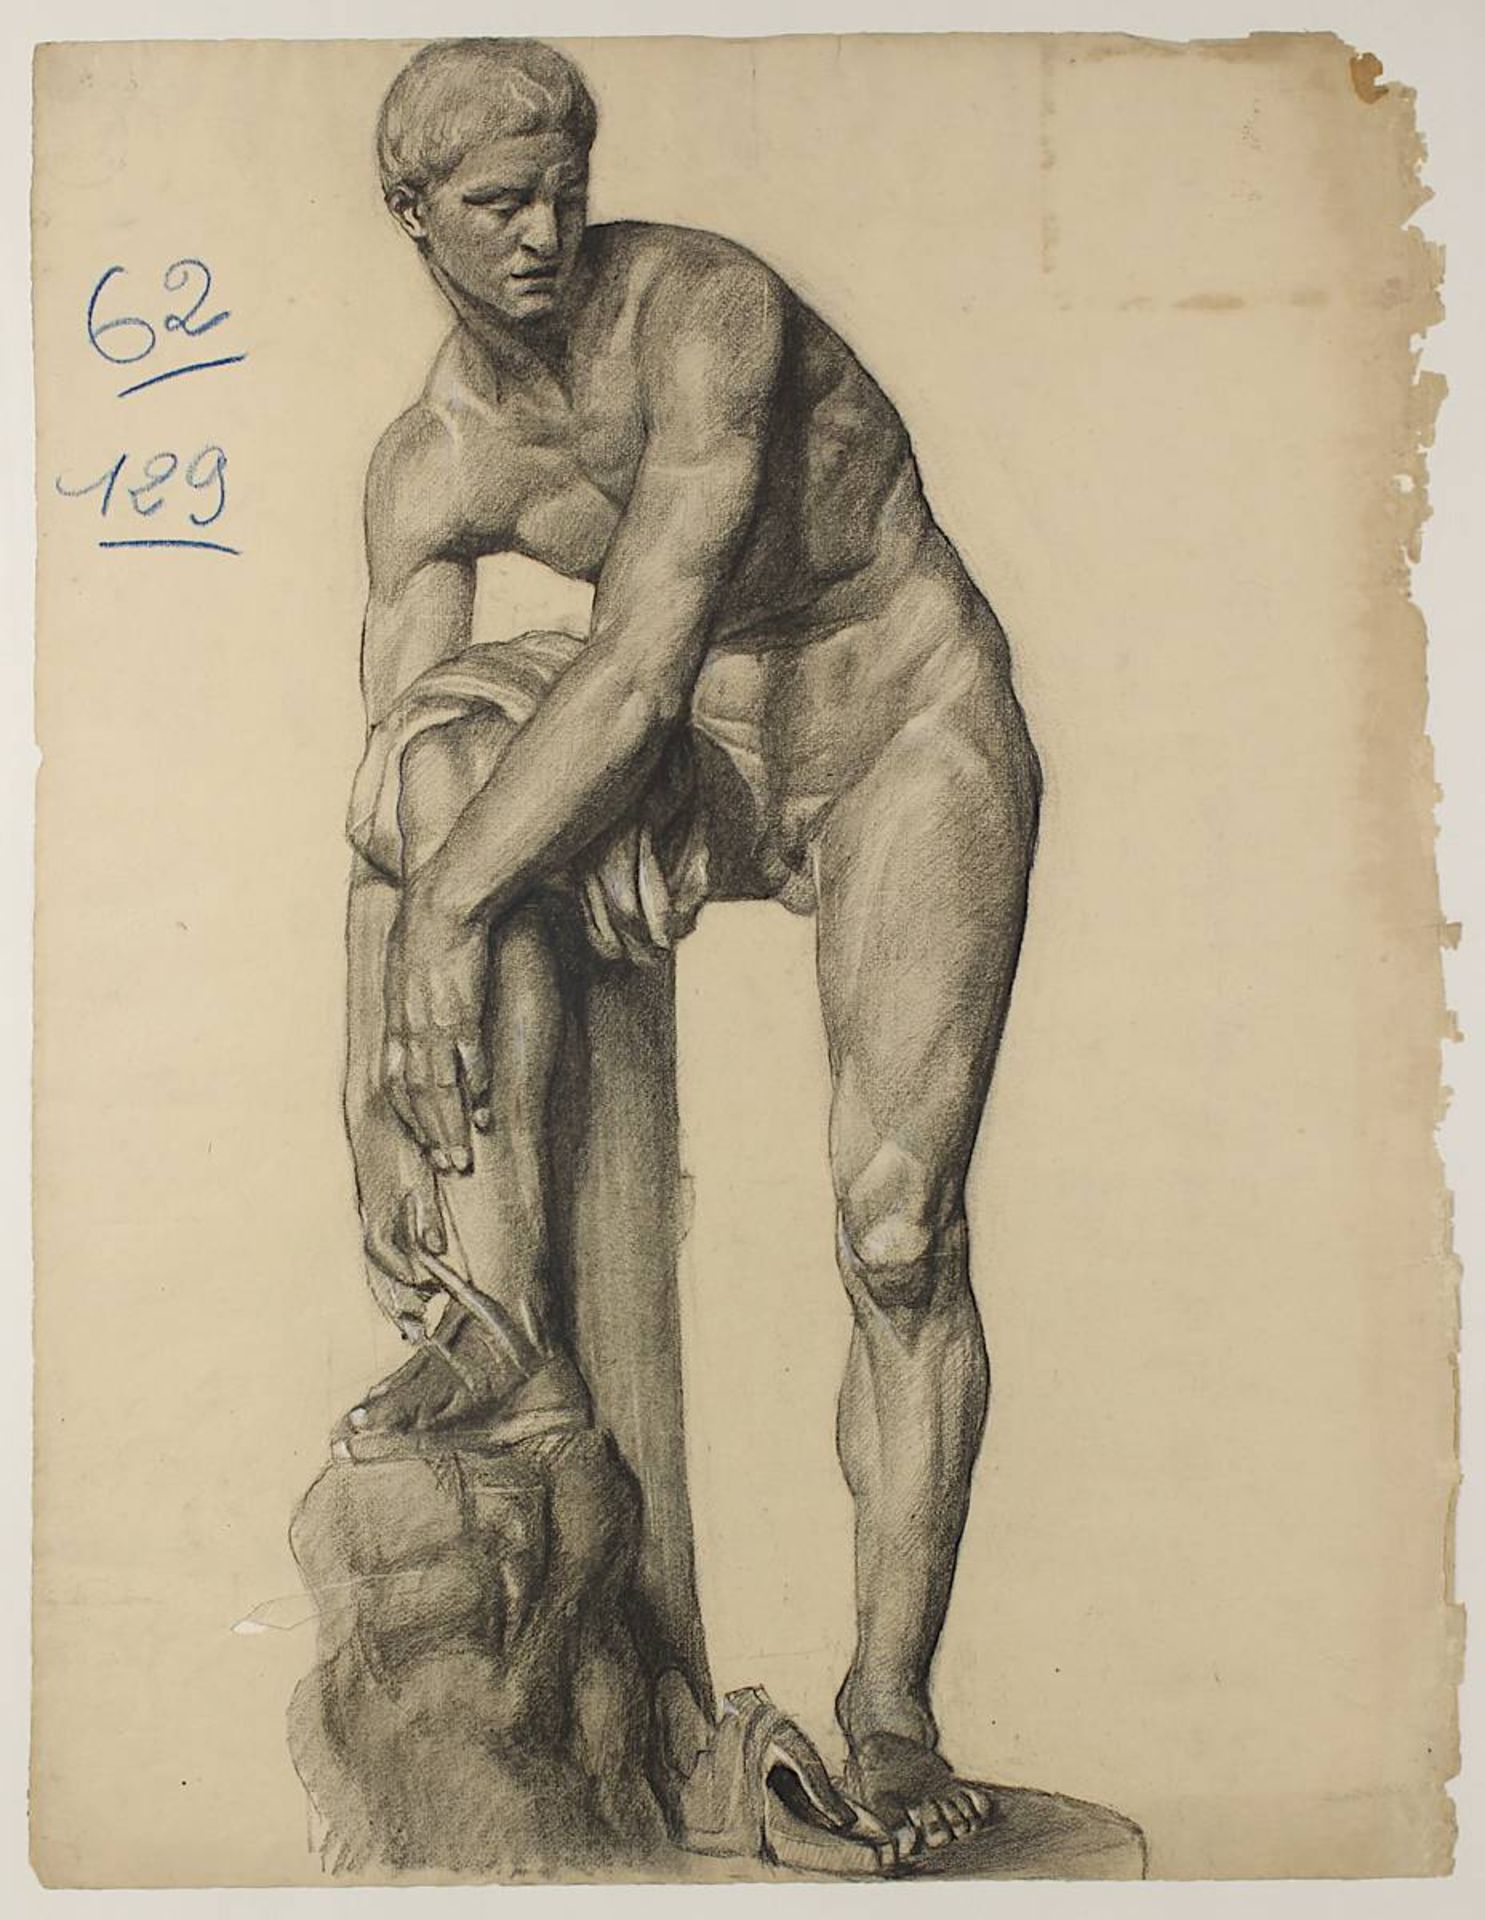 Hermes befestigt seine Sandale, Graphitstudie nach der Marmorstatue im Louvre, Paris 2. H. 19. - Image 2 of 2